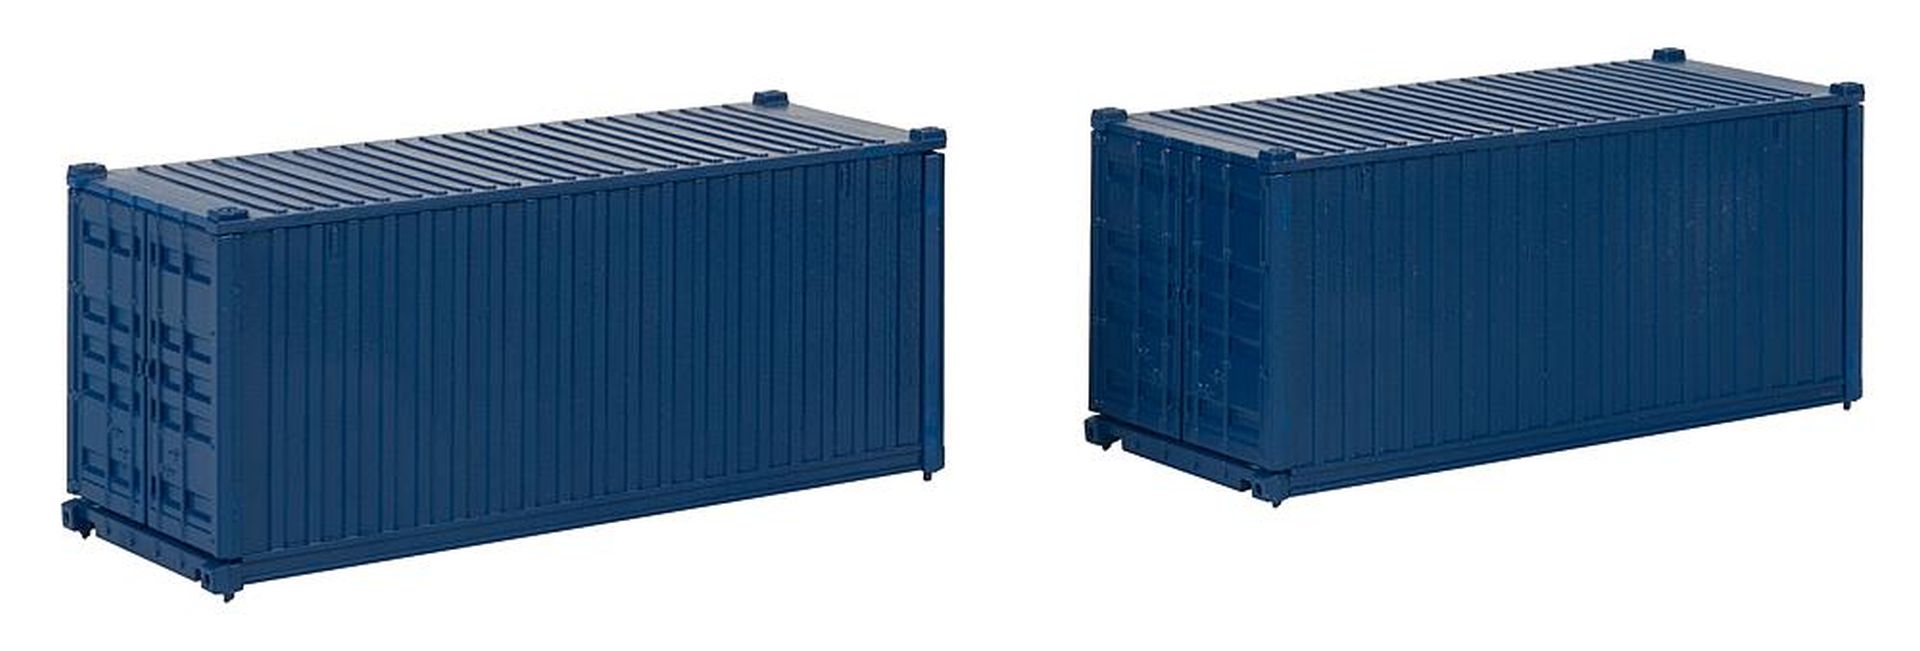 Faller 182054 - 2er Set 20' Container, blau